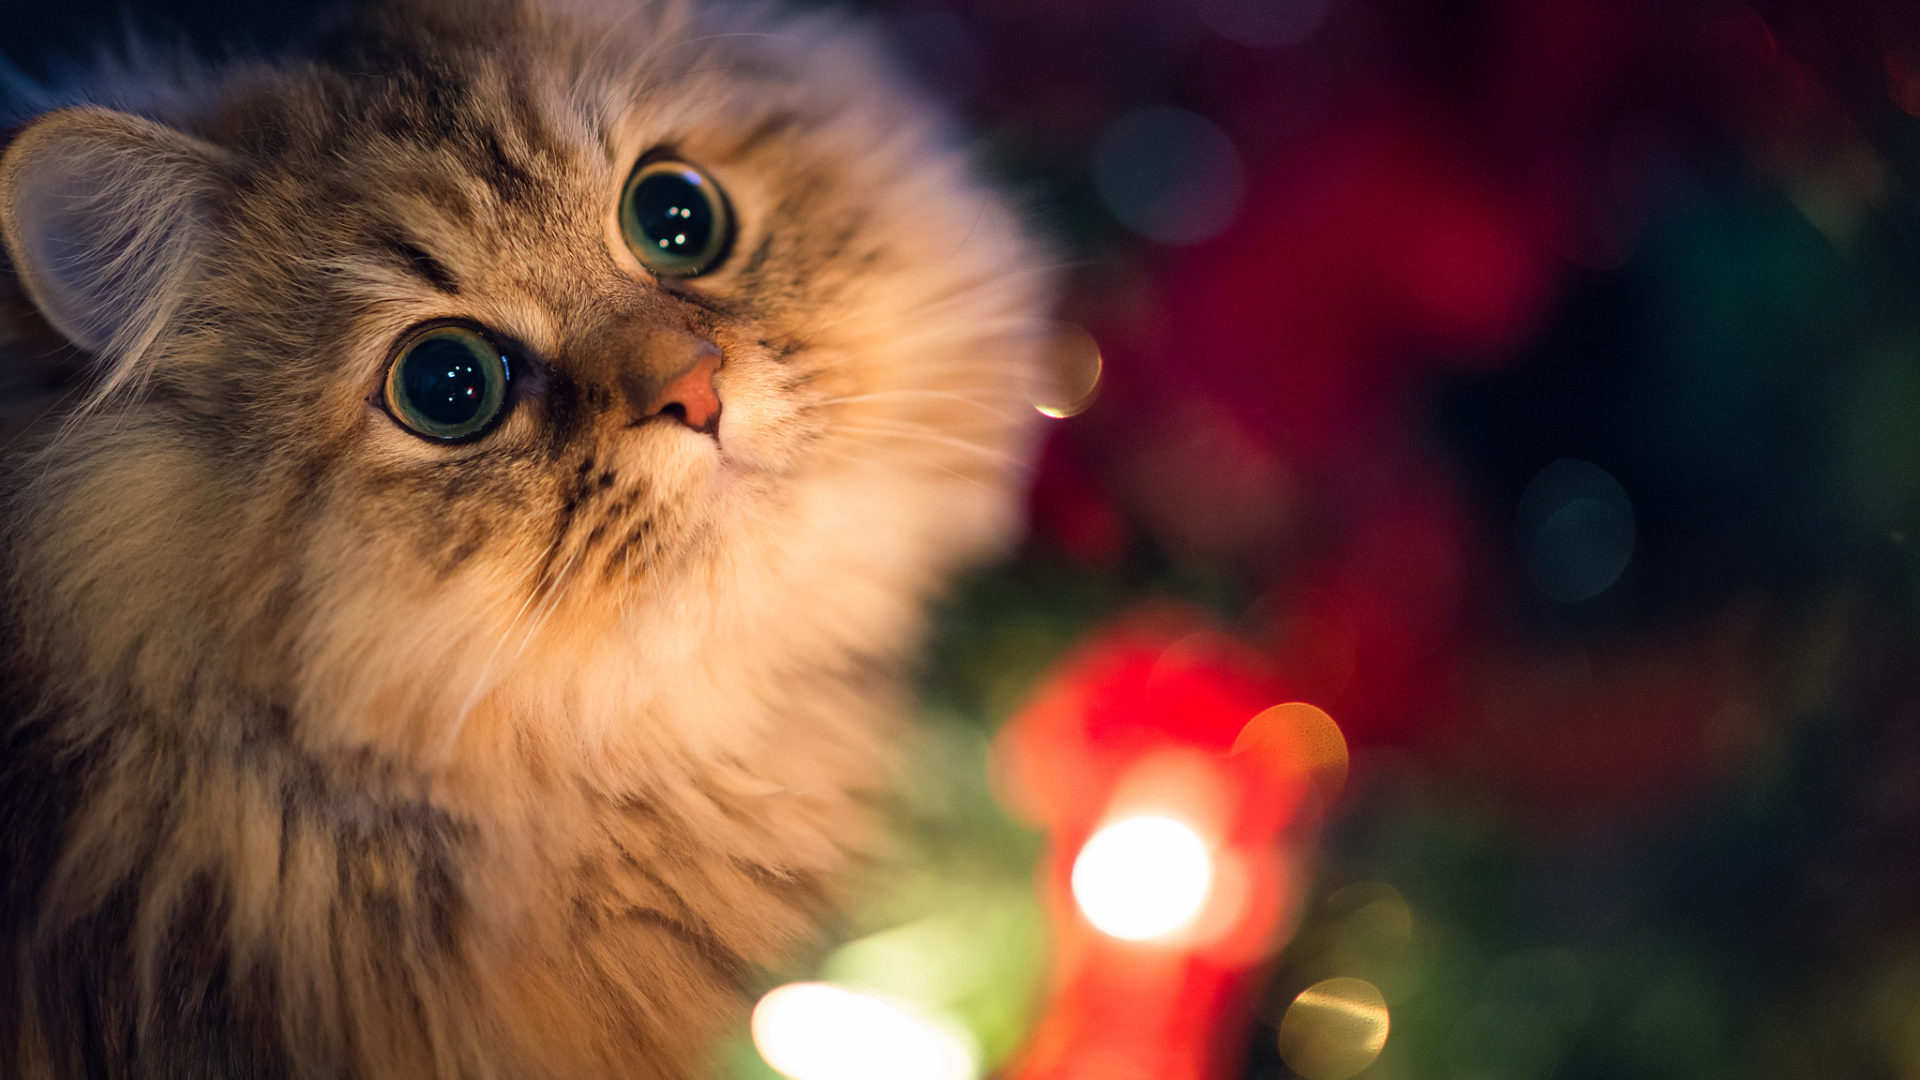 Beautiful-Innocent-Eyes-Cute-Cat-Wallpaper-cute images hd